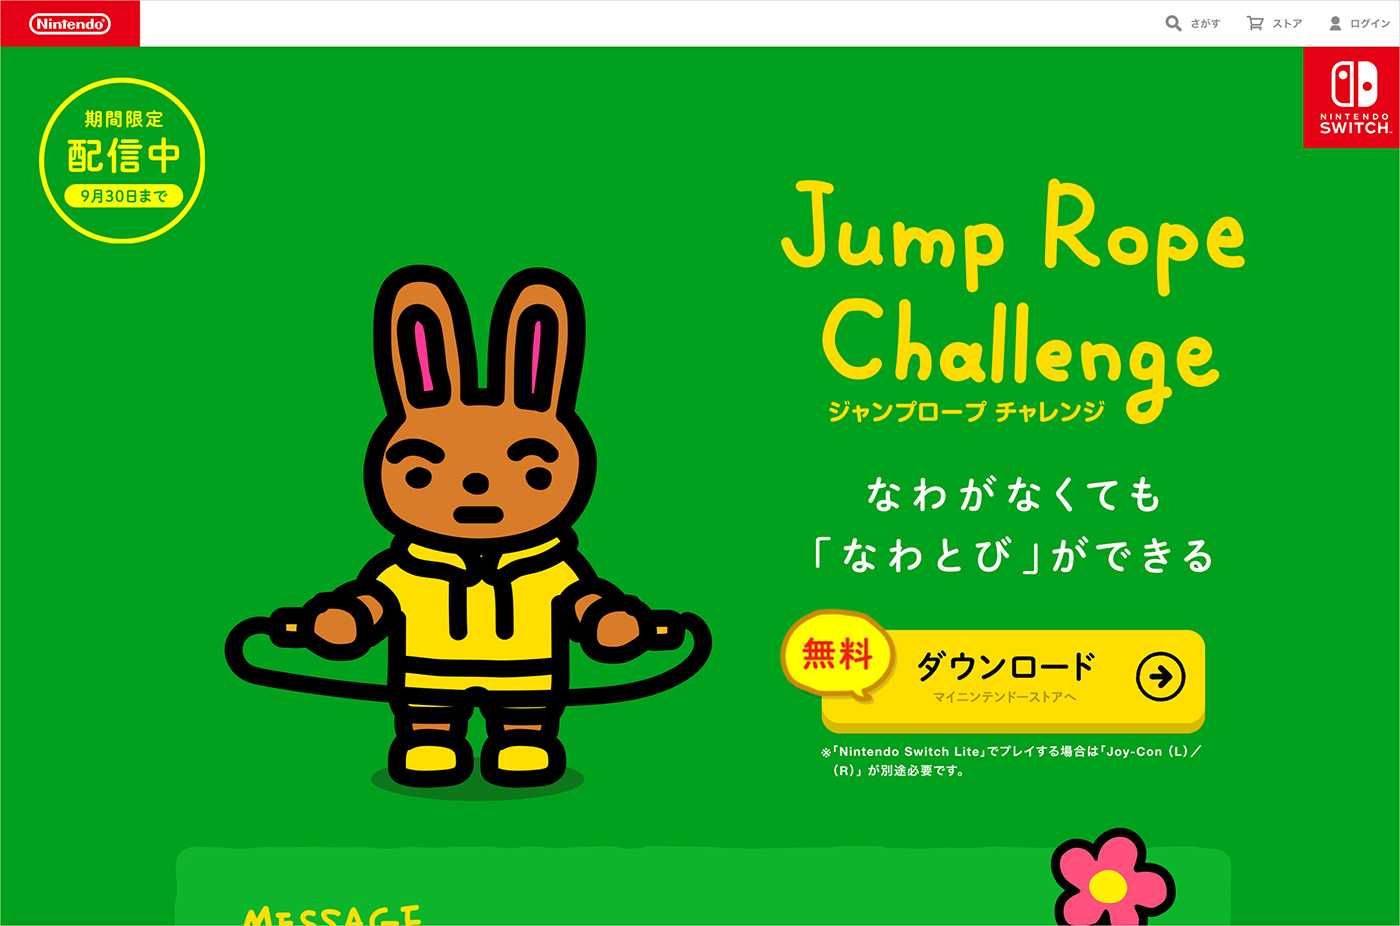 ジャンプロープ チャレンジ | Nintendo Switch | 任天堂ウェブサイトの画面キャプチャ画像